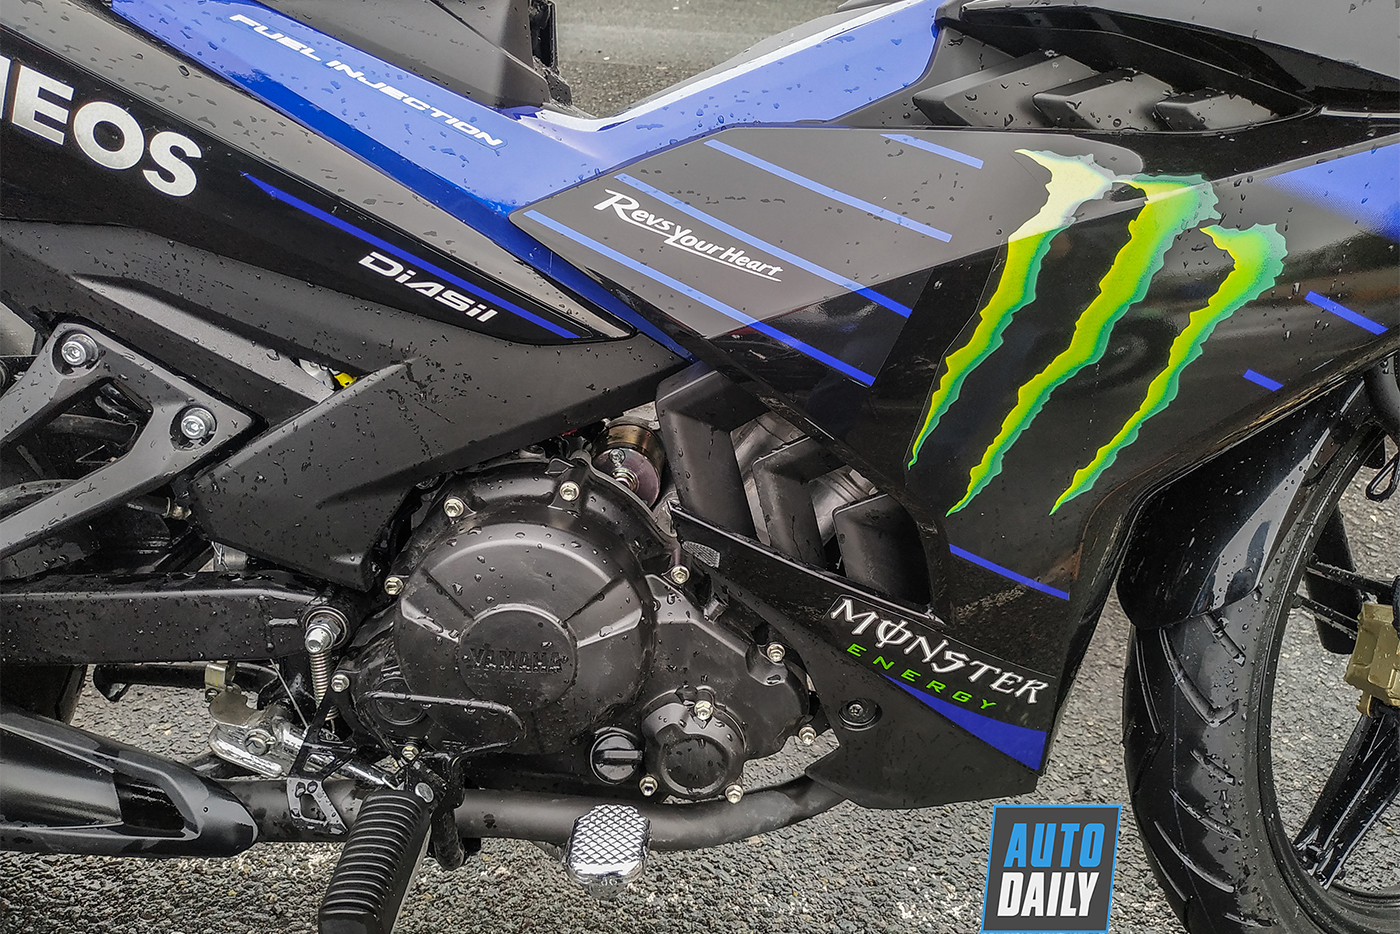 Cận cảnh Yamaha Exciter 150 2019 Monster Energy giá 49 triệu đồng